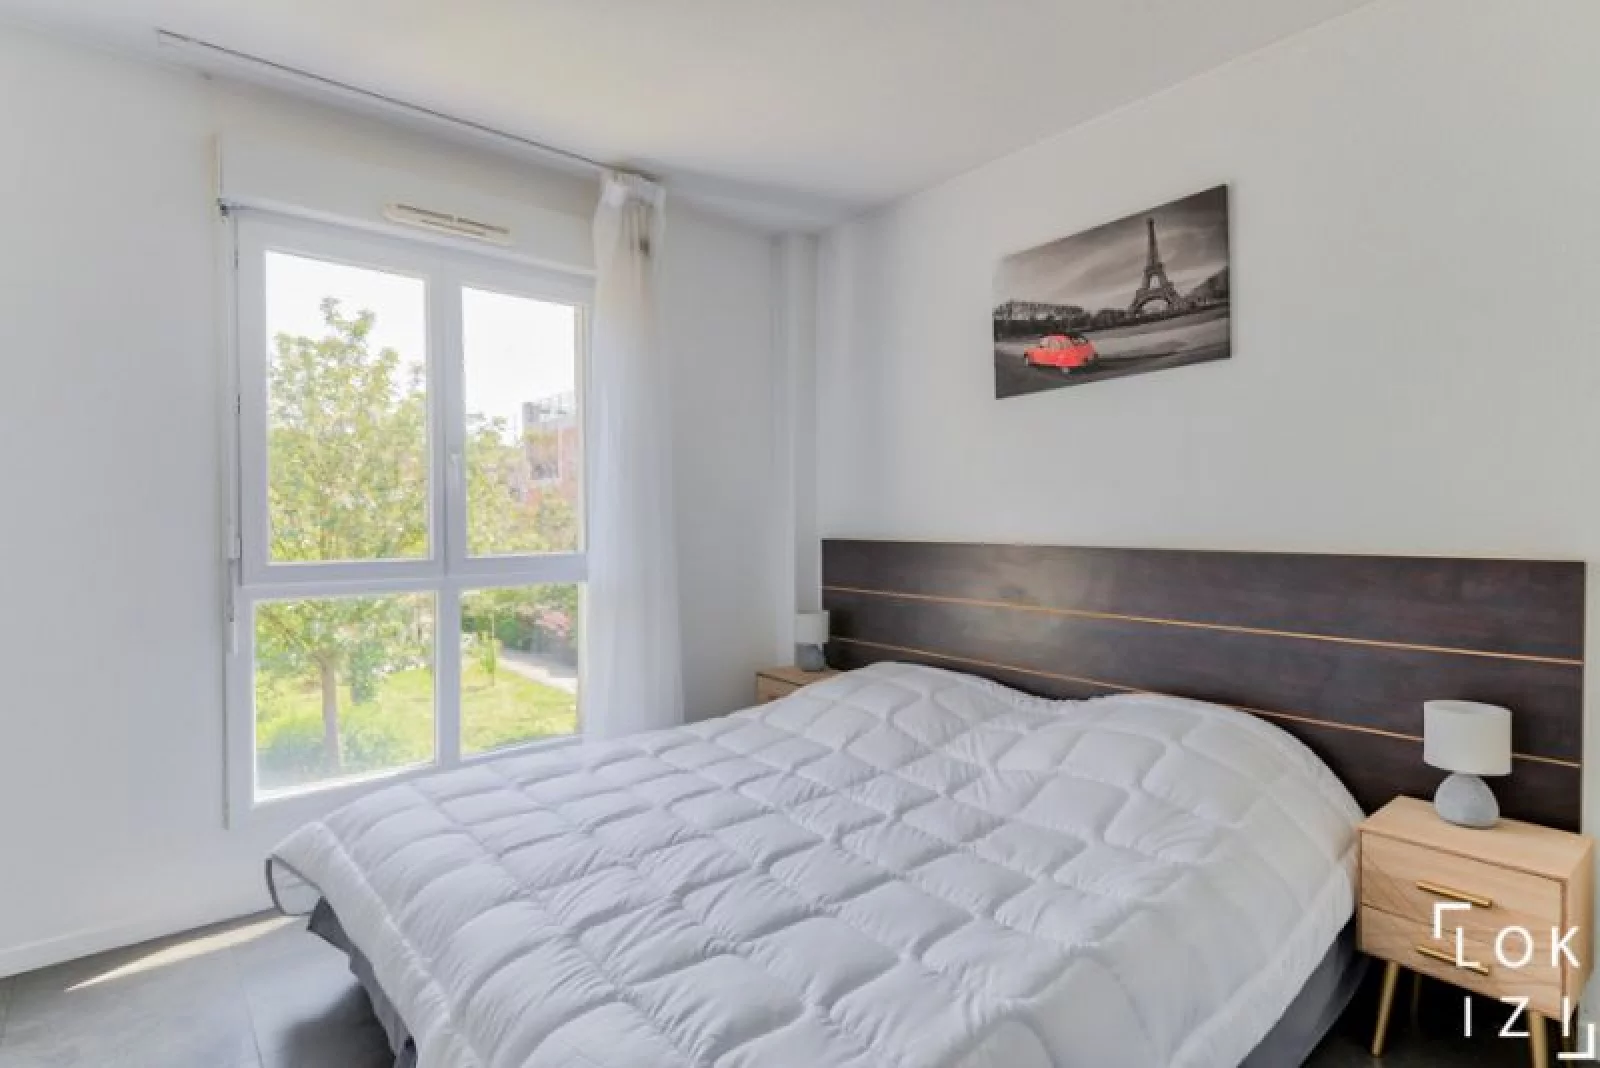 Location appartement meublé duplex 4 pièces 89.59 m² (Paris est - Bry sur Marne)